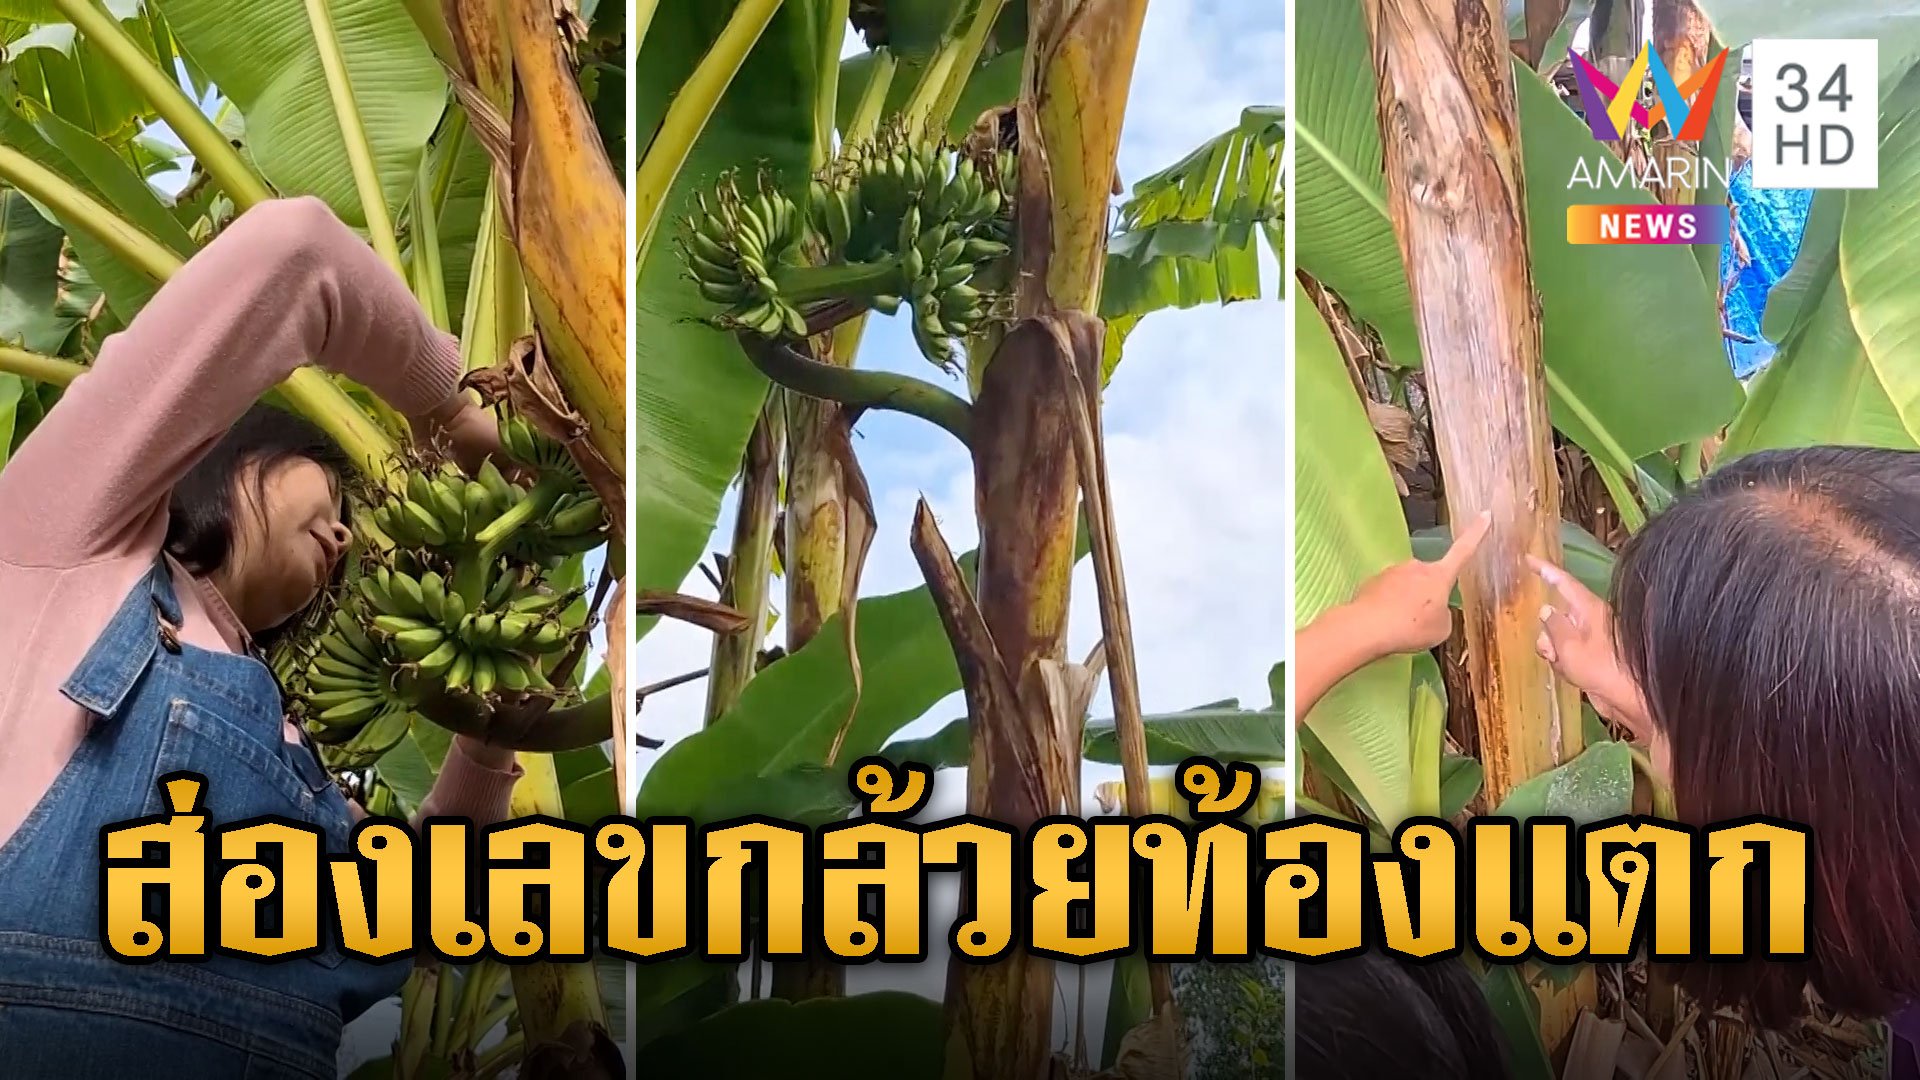 แห่ส่องเลขต้นกล้วยแปลก ท้องแตกออกลูกไร้ปลี | ข่าวอรุณอมรินทร์ | 24 ธ.ค. 66 | AMARIN TVHD34